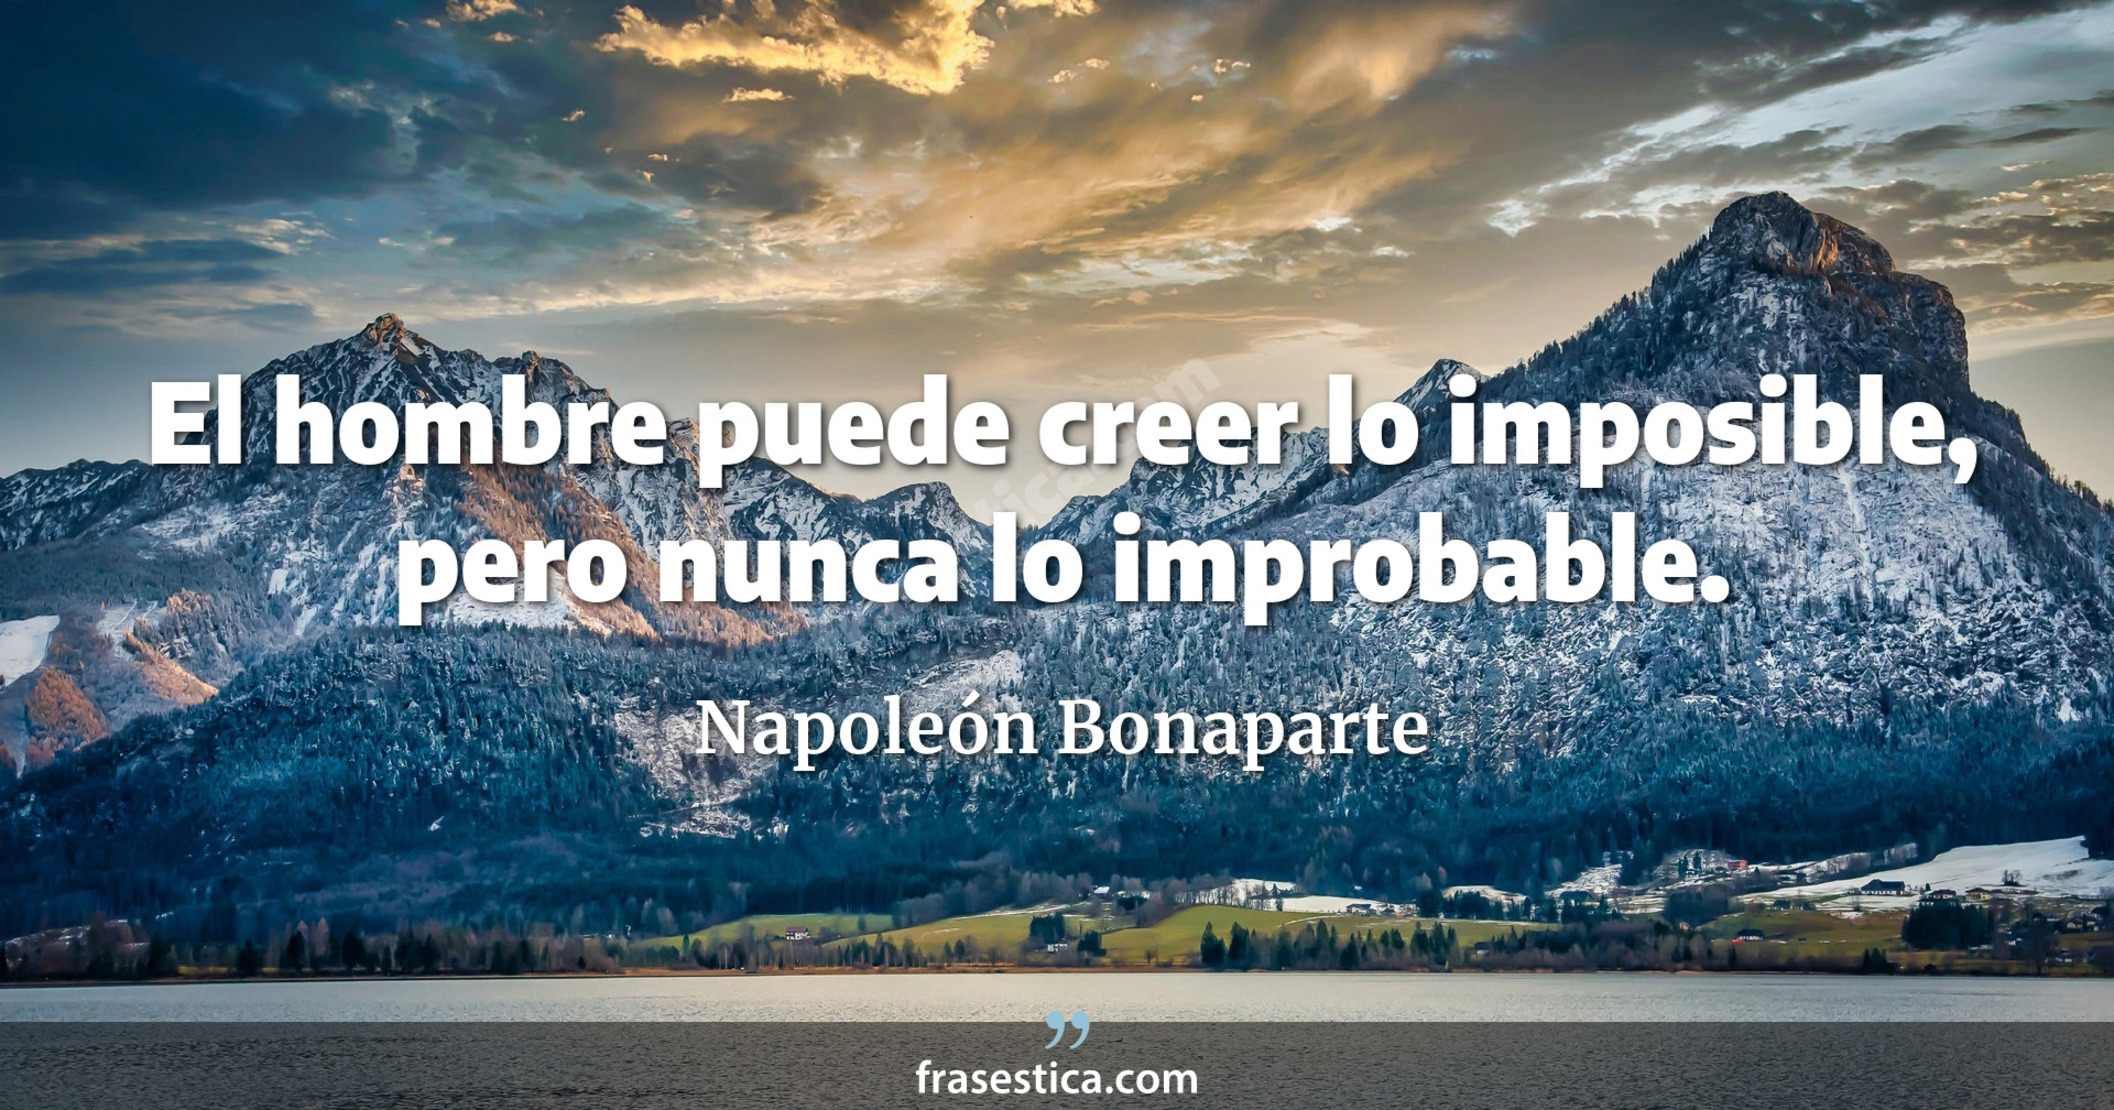 El hombre puede creer lo imposible, pero nunca lo improbable. - Napoleón Bonaparte